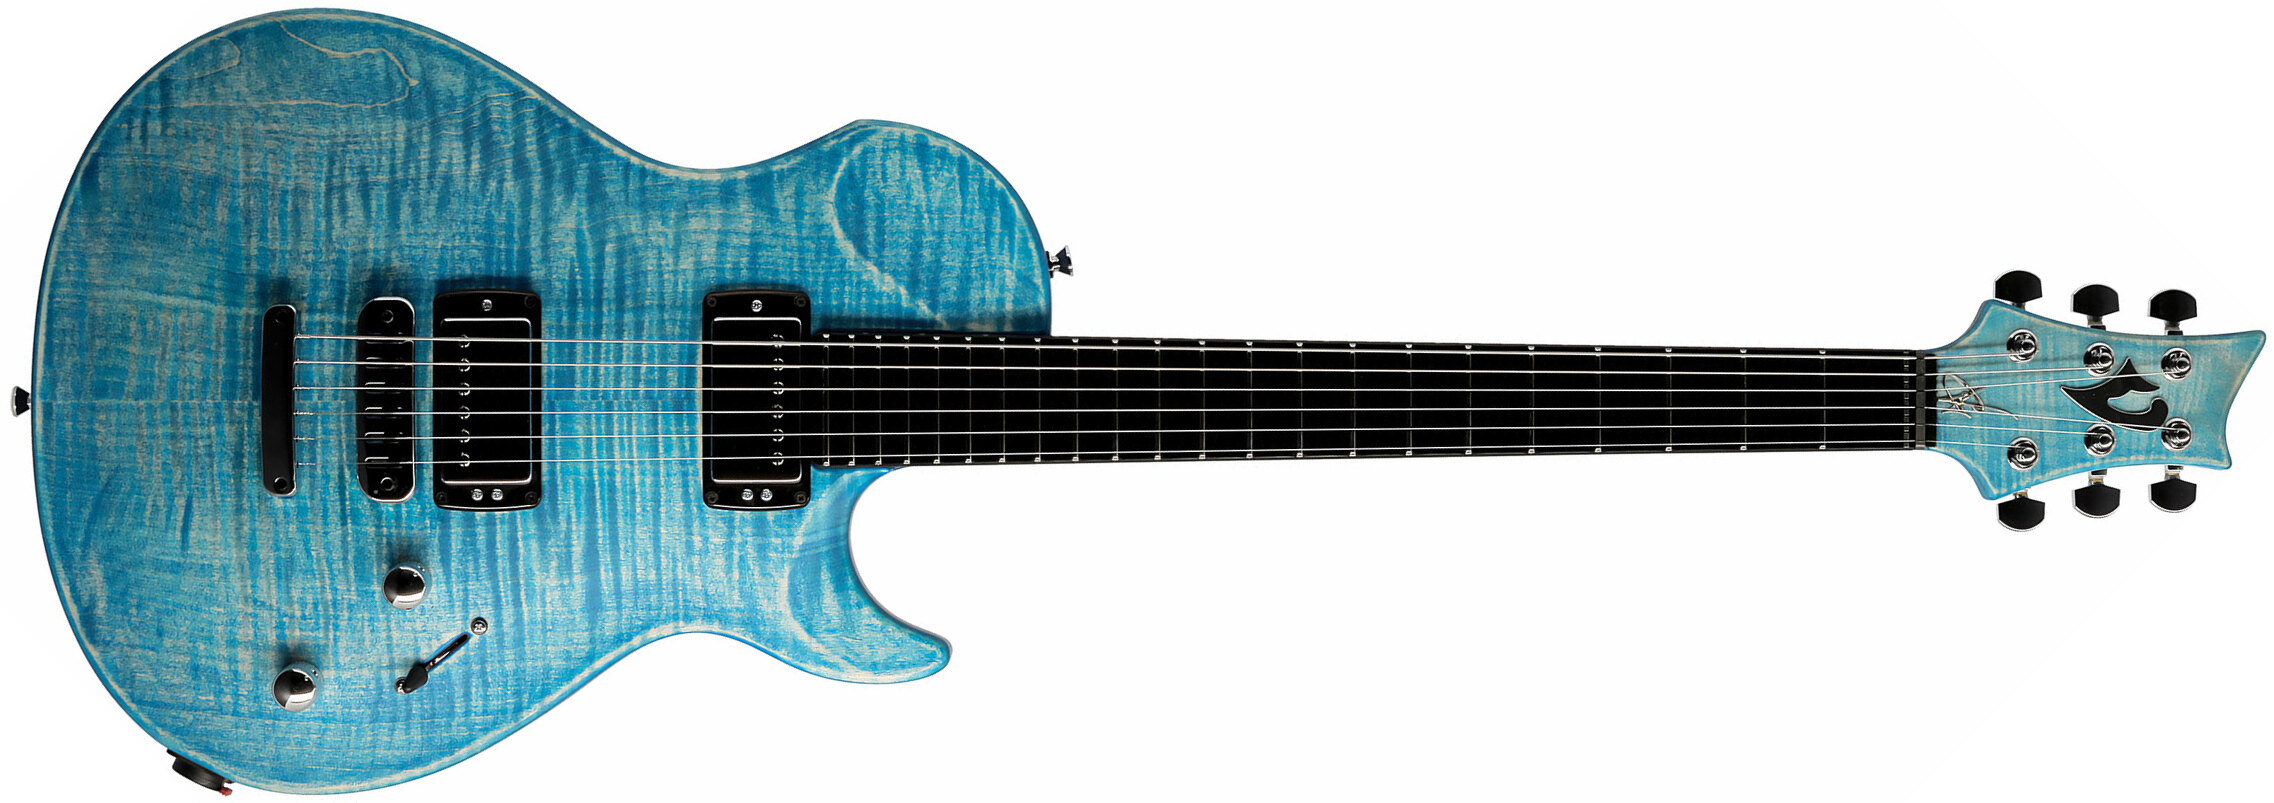 Vigier G.v. Wood 2h Ht Phe - Stonewash Blue Matt - Guitarra eléctrica de corte único. - Main picture